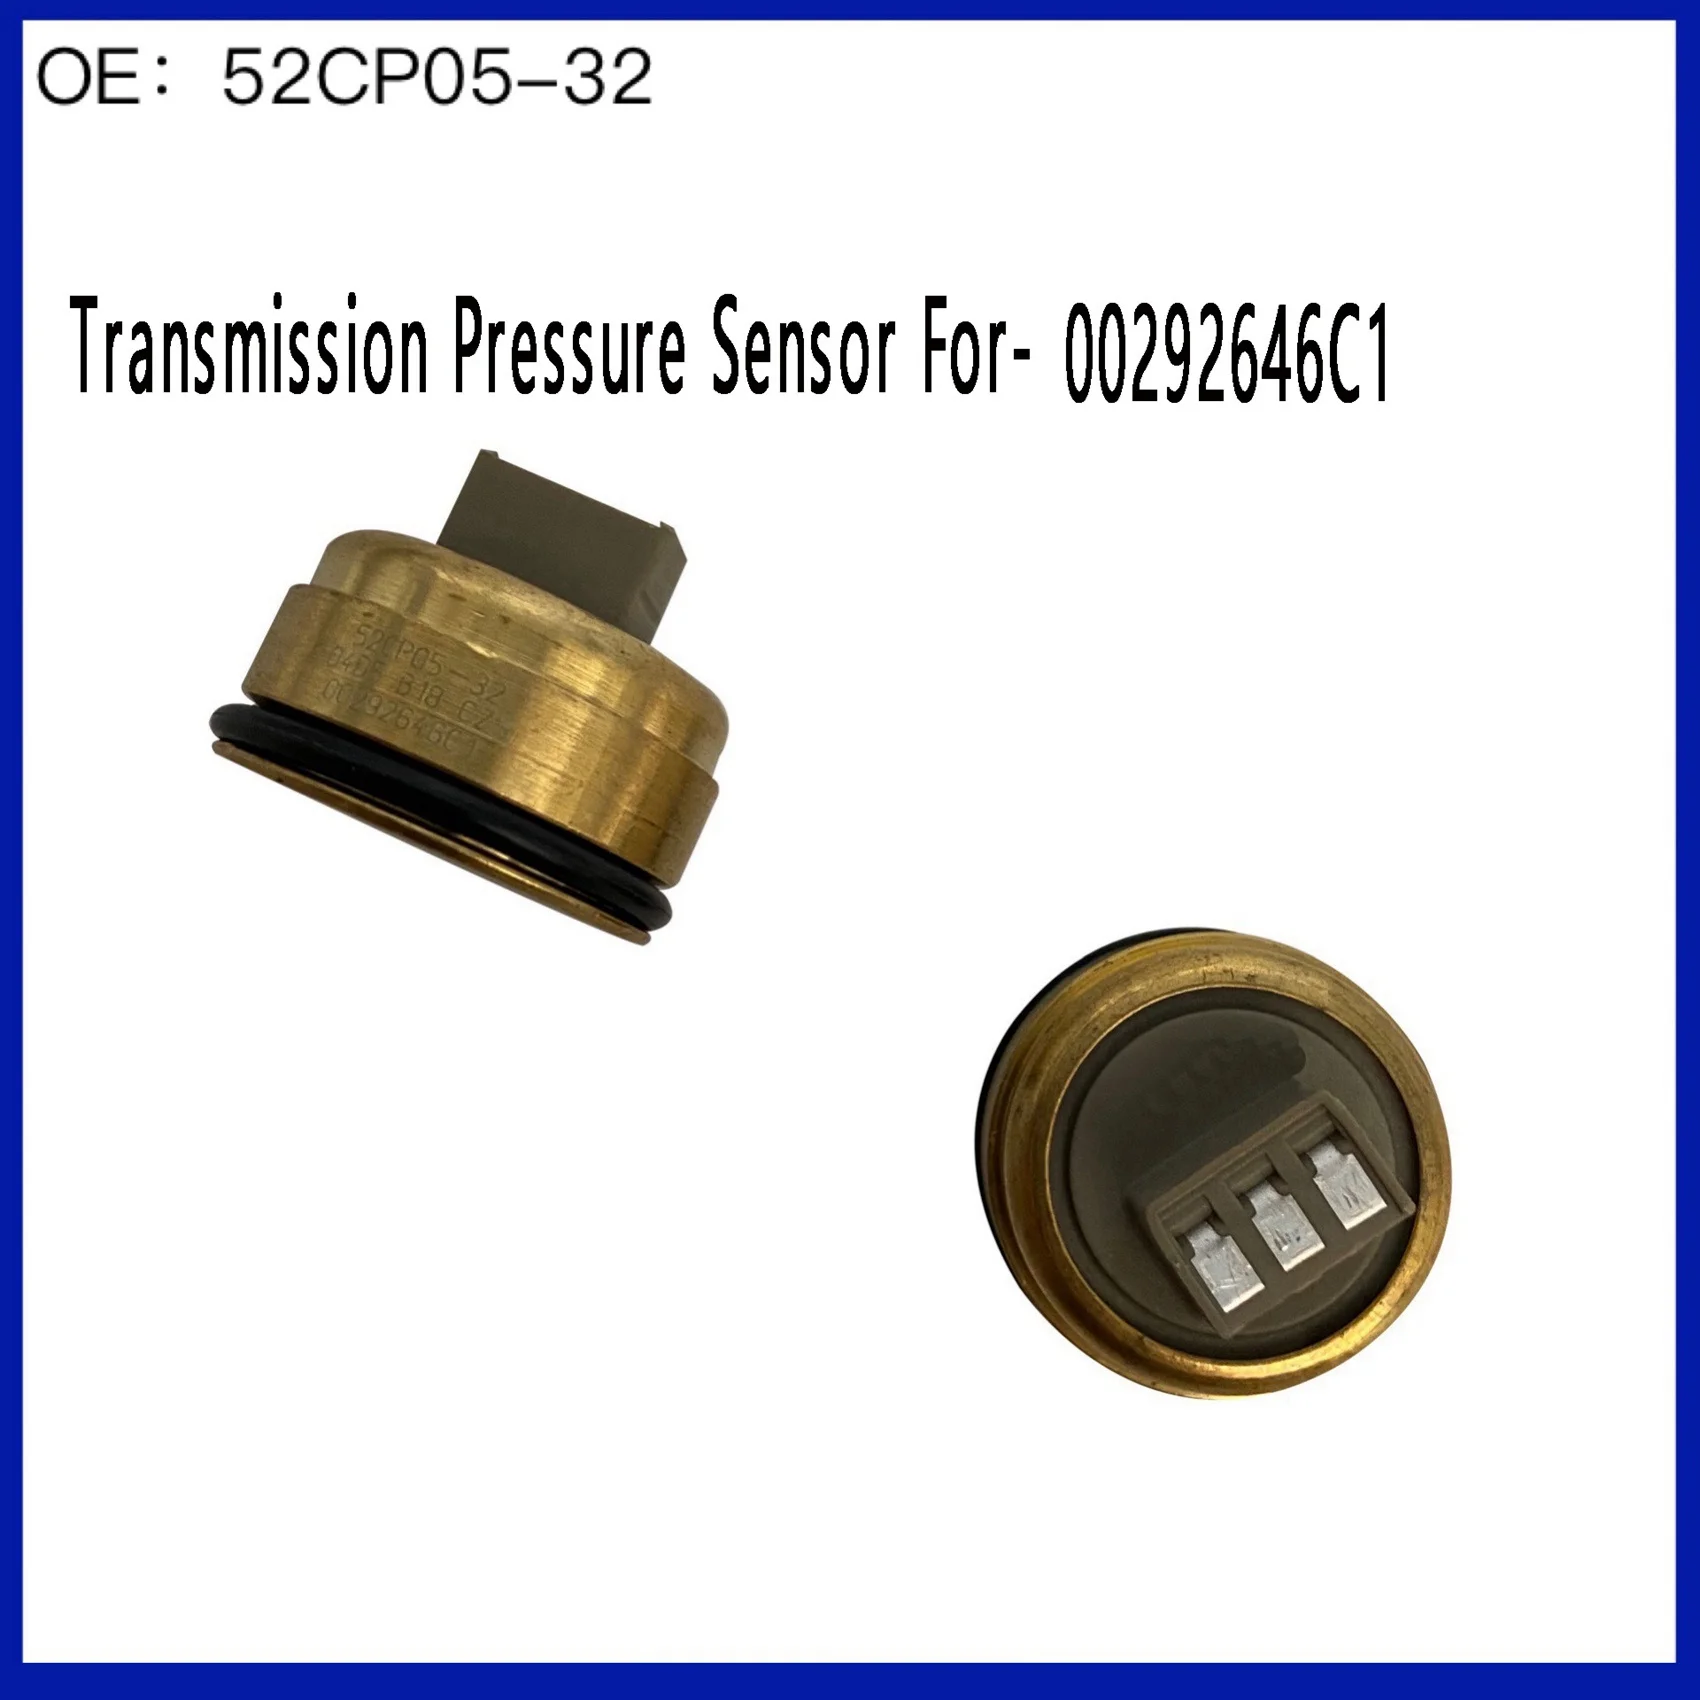 

Датчик давления передачи для Audi 52CP05-32 00292646C1